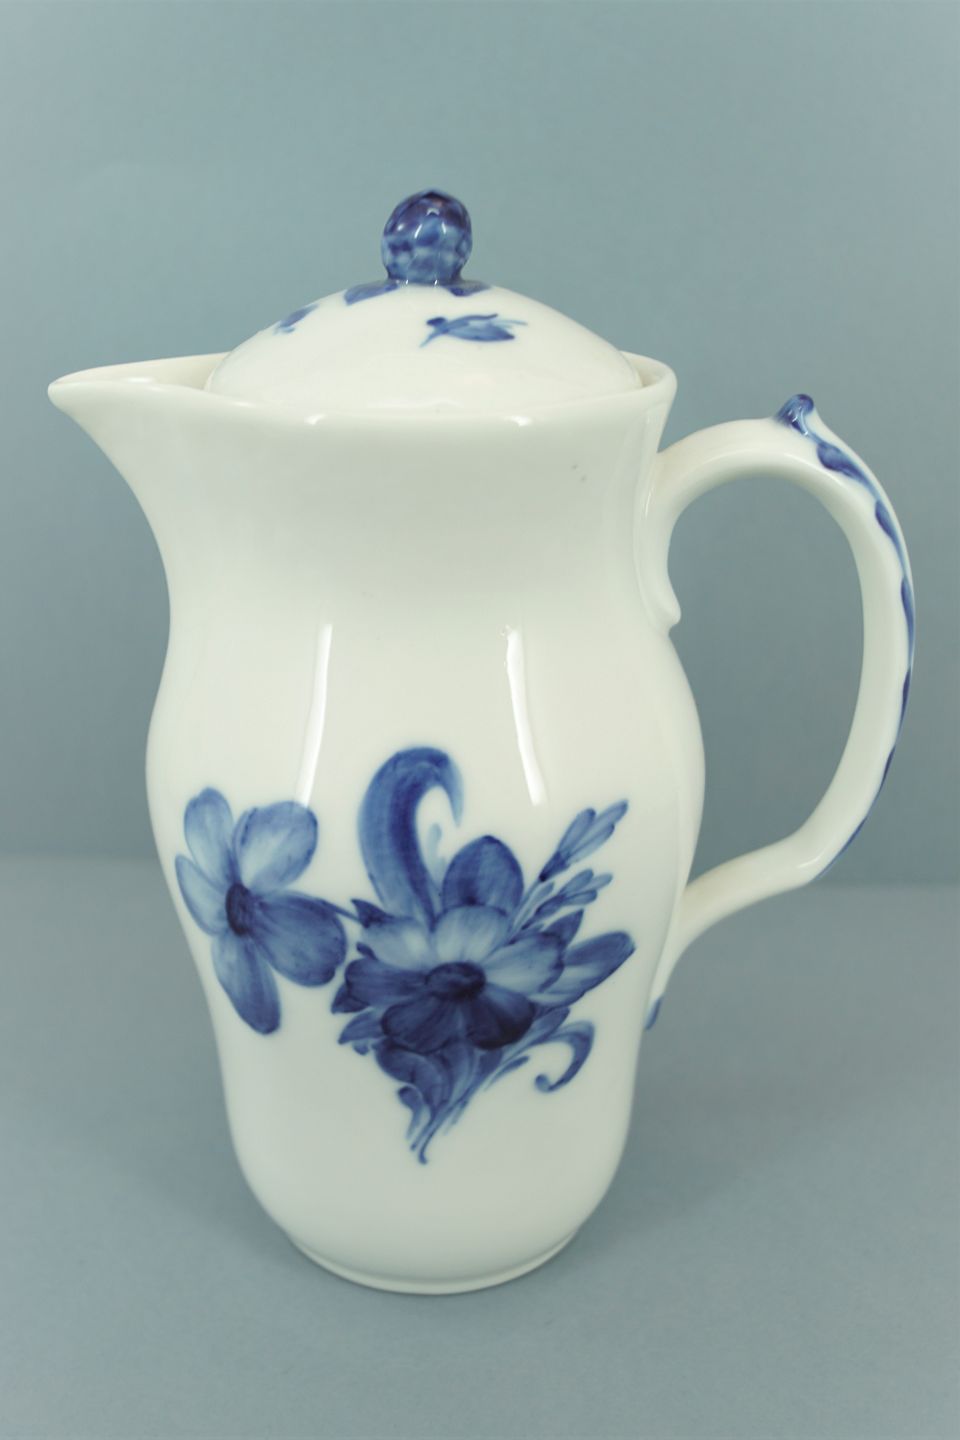 Five Pieces Of Royal Copenhagen Blue Flower Braided Porcelain